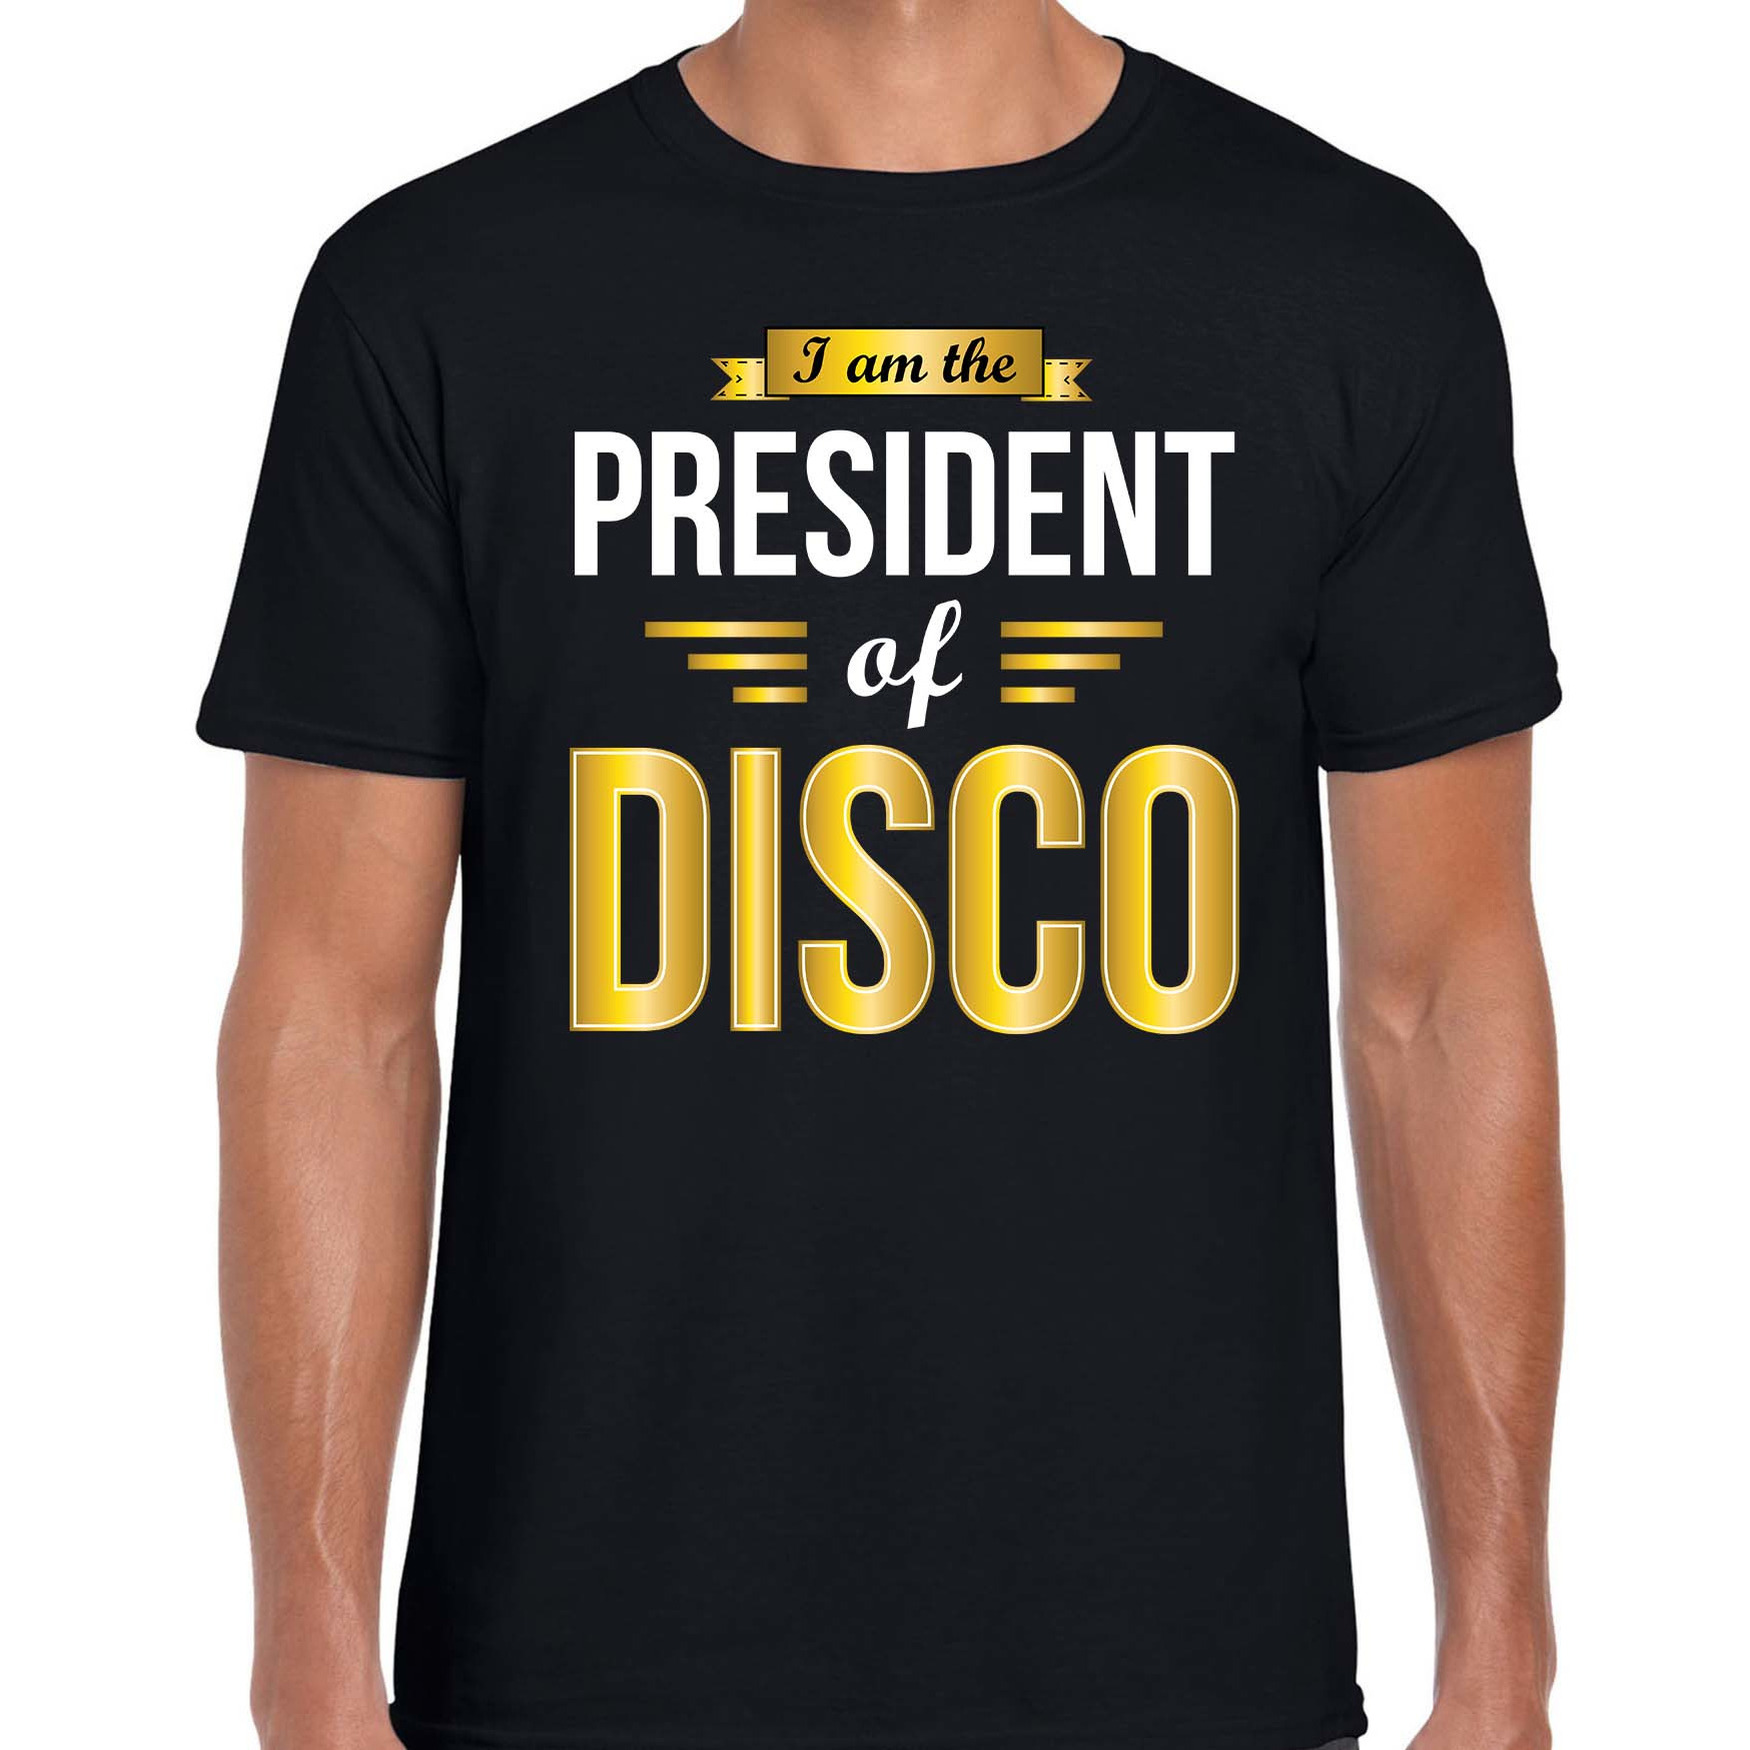 President of disco feest t-shirt zwart voor heren Disco verkleedshirts